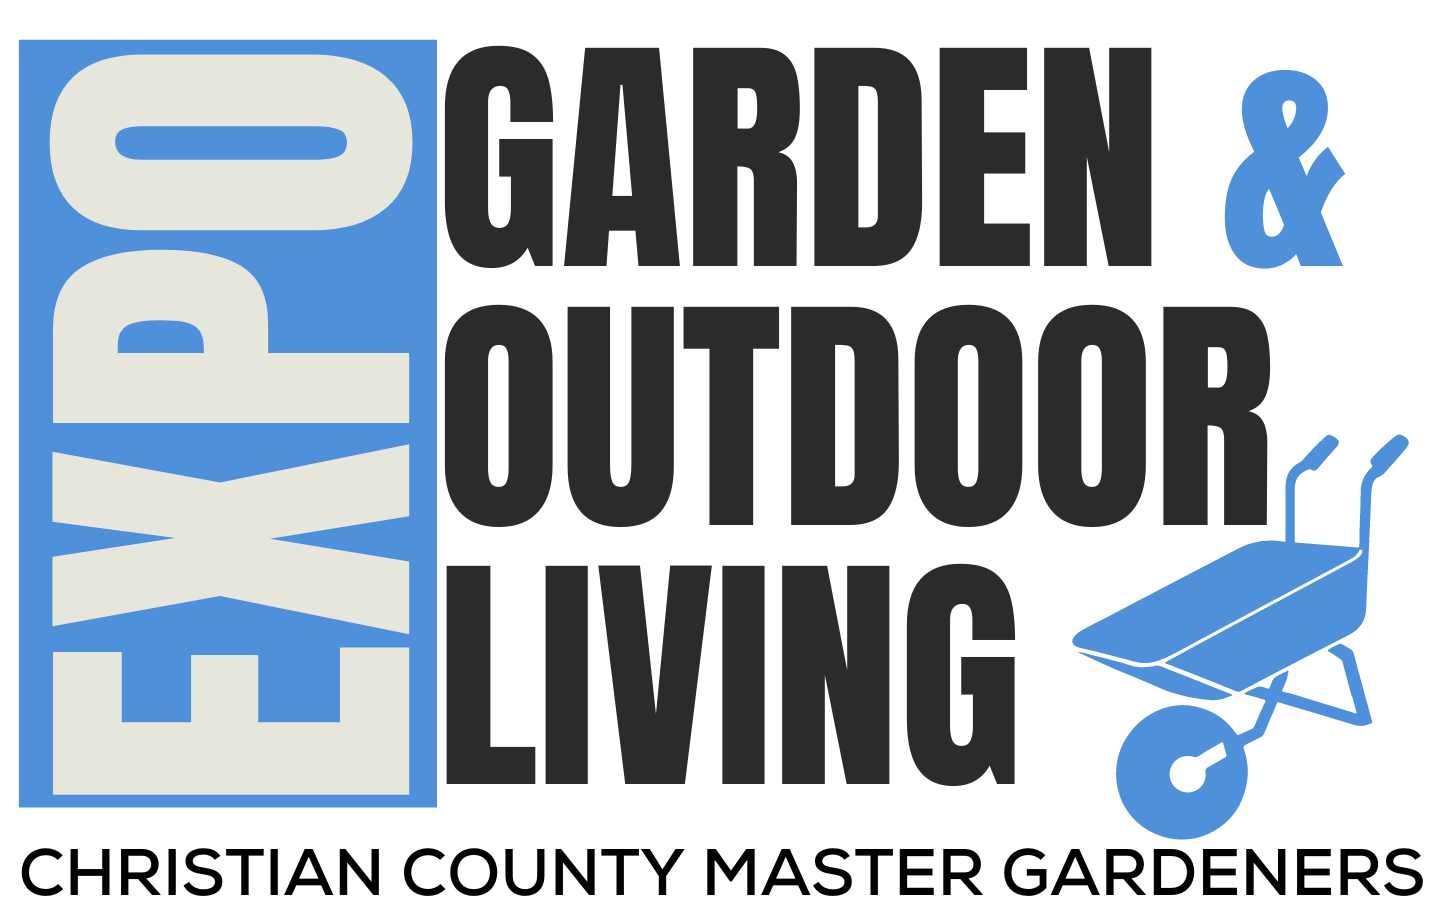 Garden & Outdoor Living EXPO